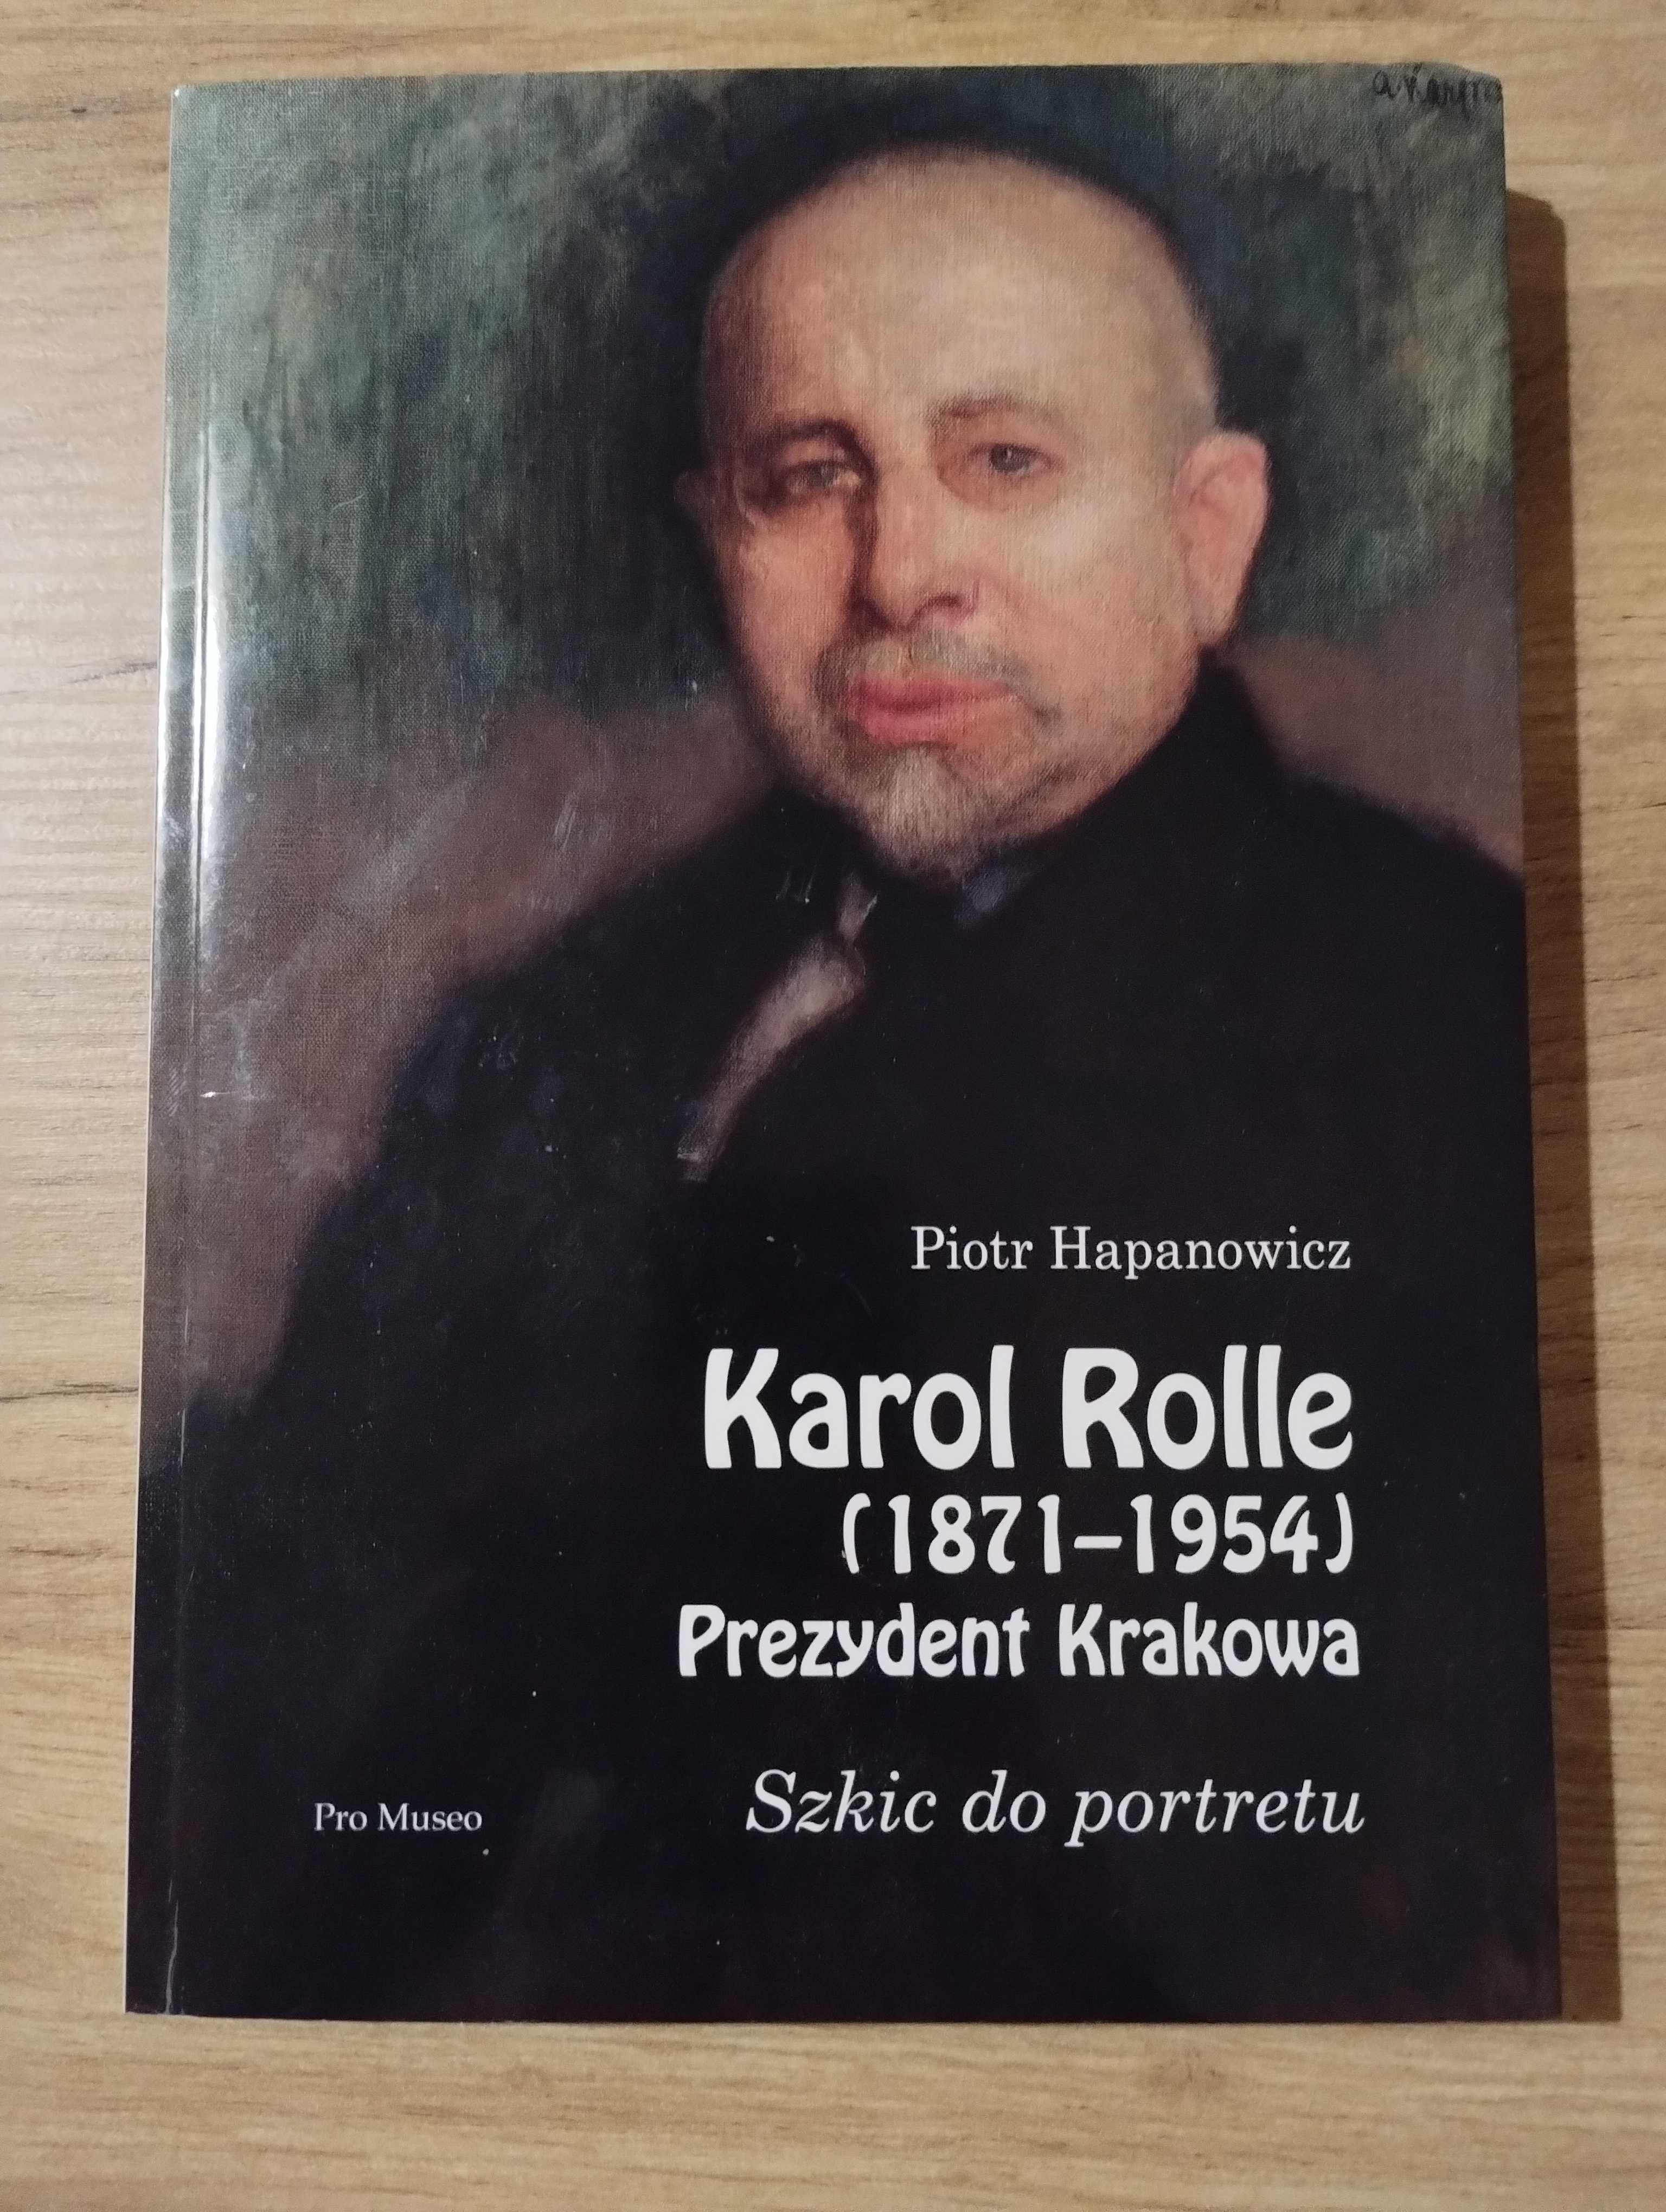 Harpanowicz Karol Rolle Prezydent szkic do portretu